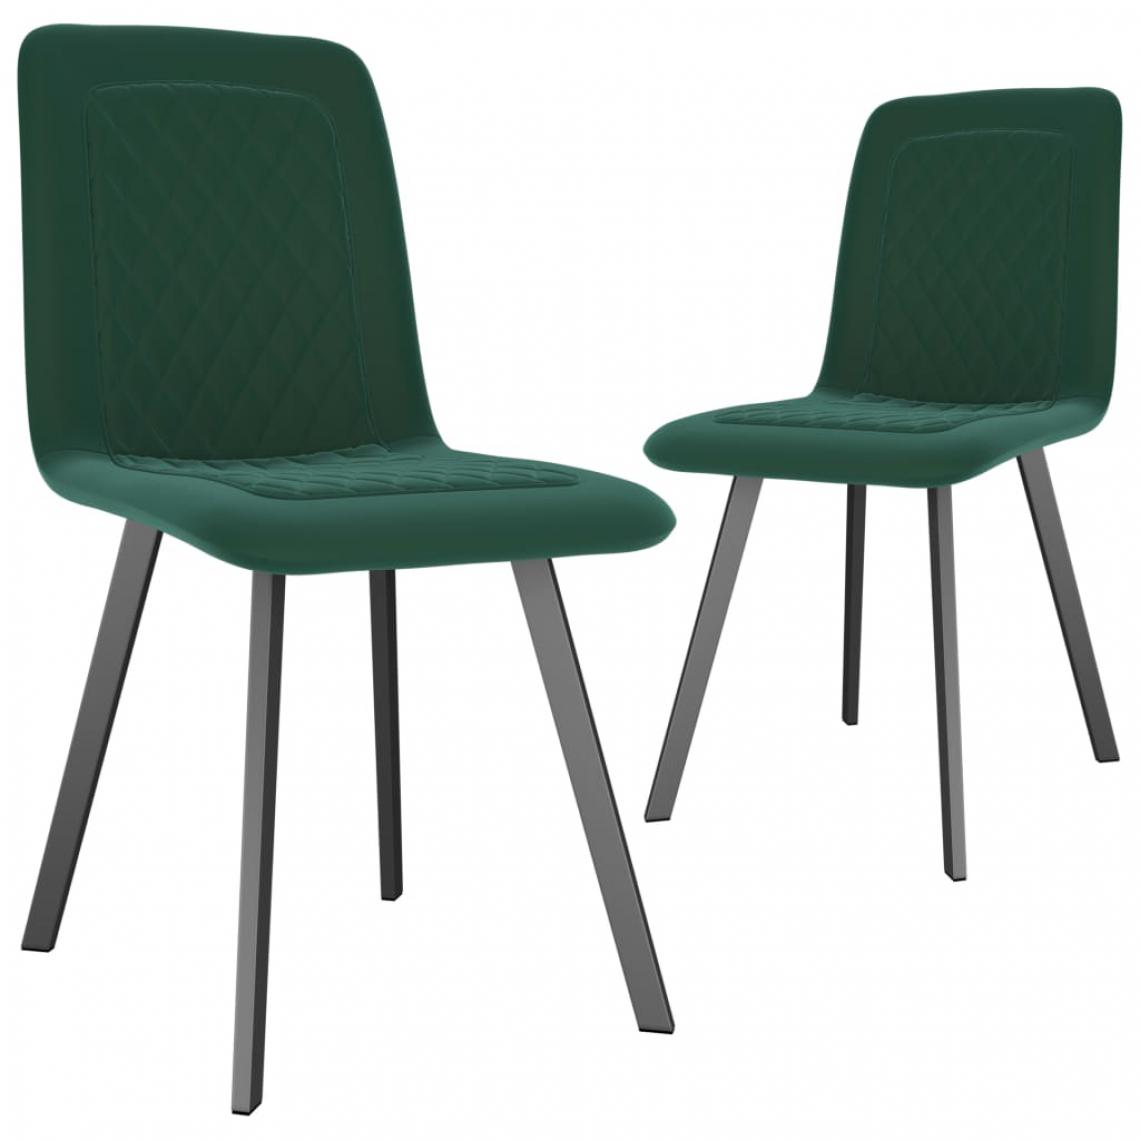 Decoshop26 - Lot de 2 chaises de salle à manger cuisine design moderne velours vert CDS021135 - Chaises